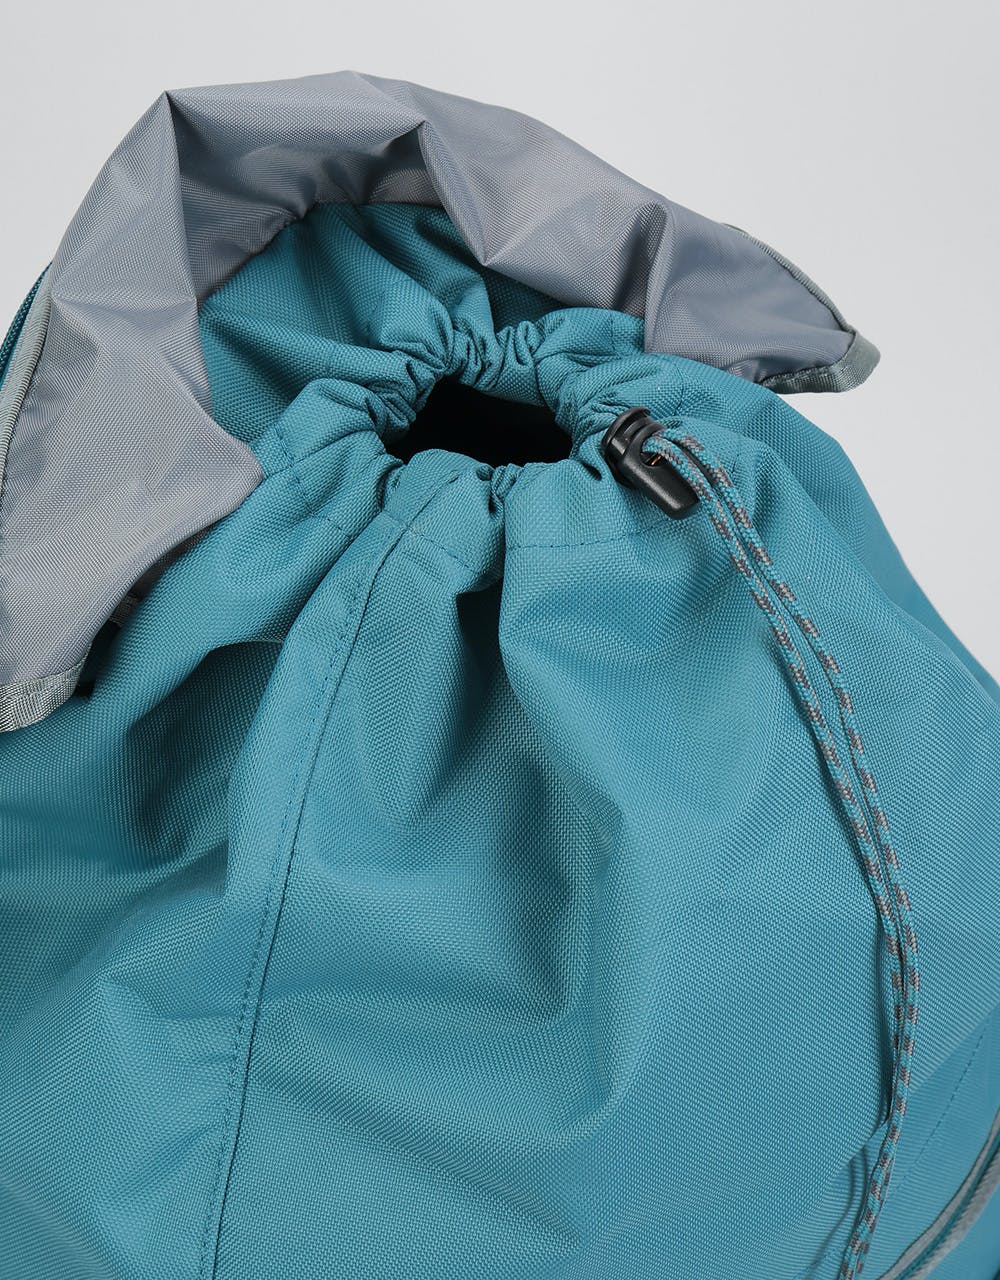 Patagonia Arbor Classic Pack 25L Backpack - Tasmanian Teal